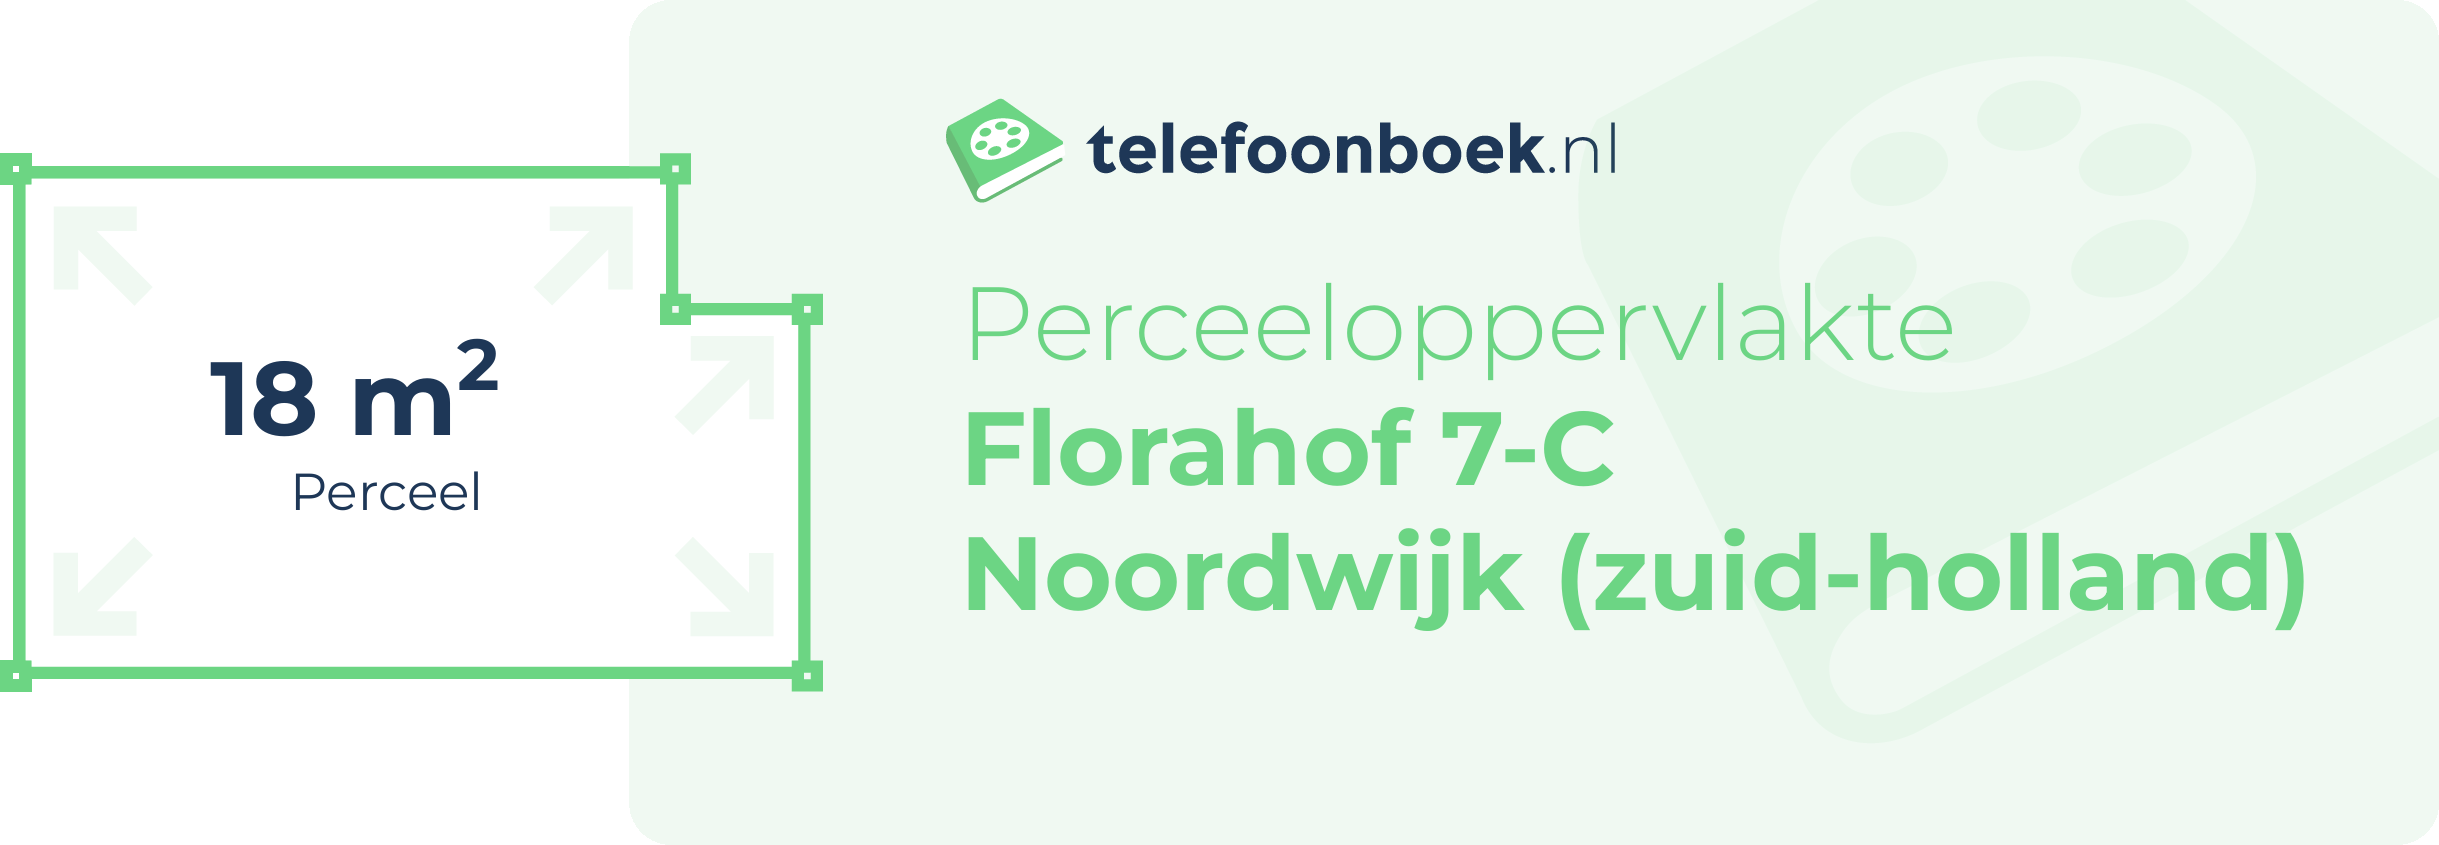 Perceeloppervlakte Florahof 7-C Noordwijk (Zuid-Holland)